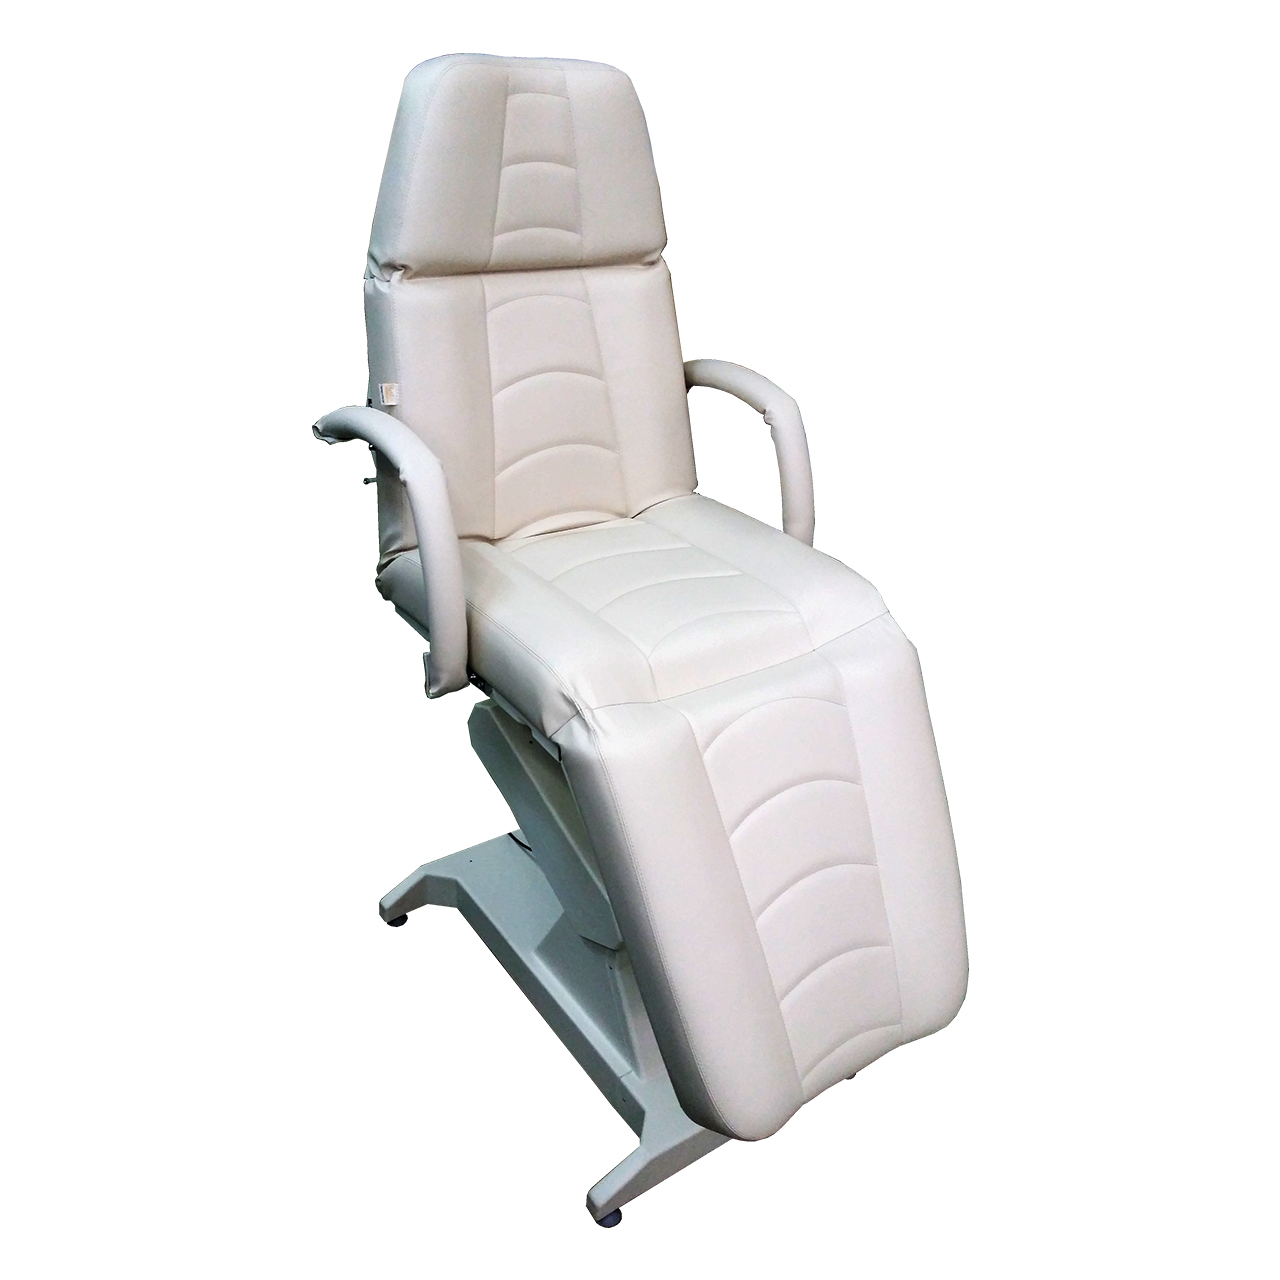 Кресло процедурное с электроприводом ОД-4, с прямыми откидными подлокотниками, с ножной педалью управления.